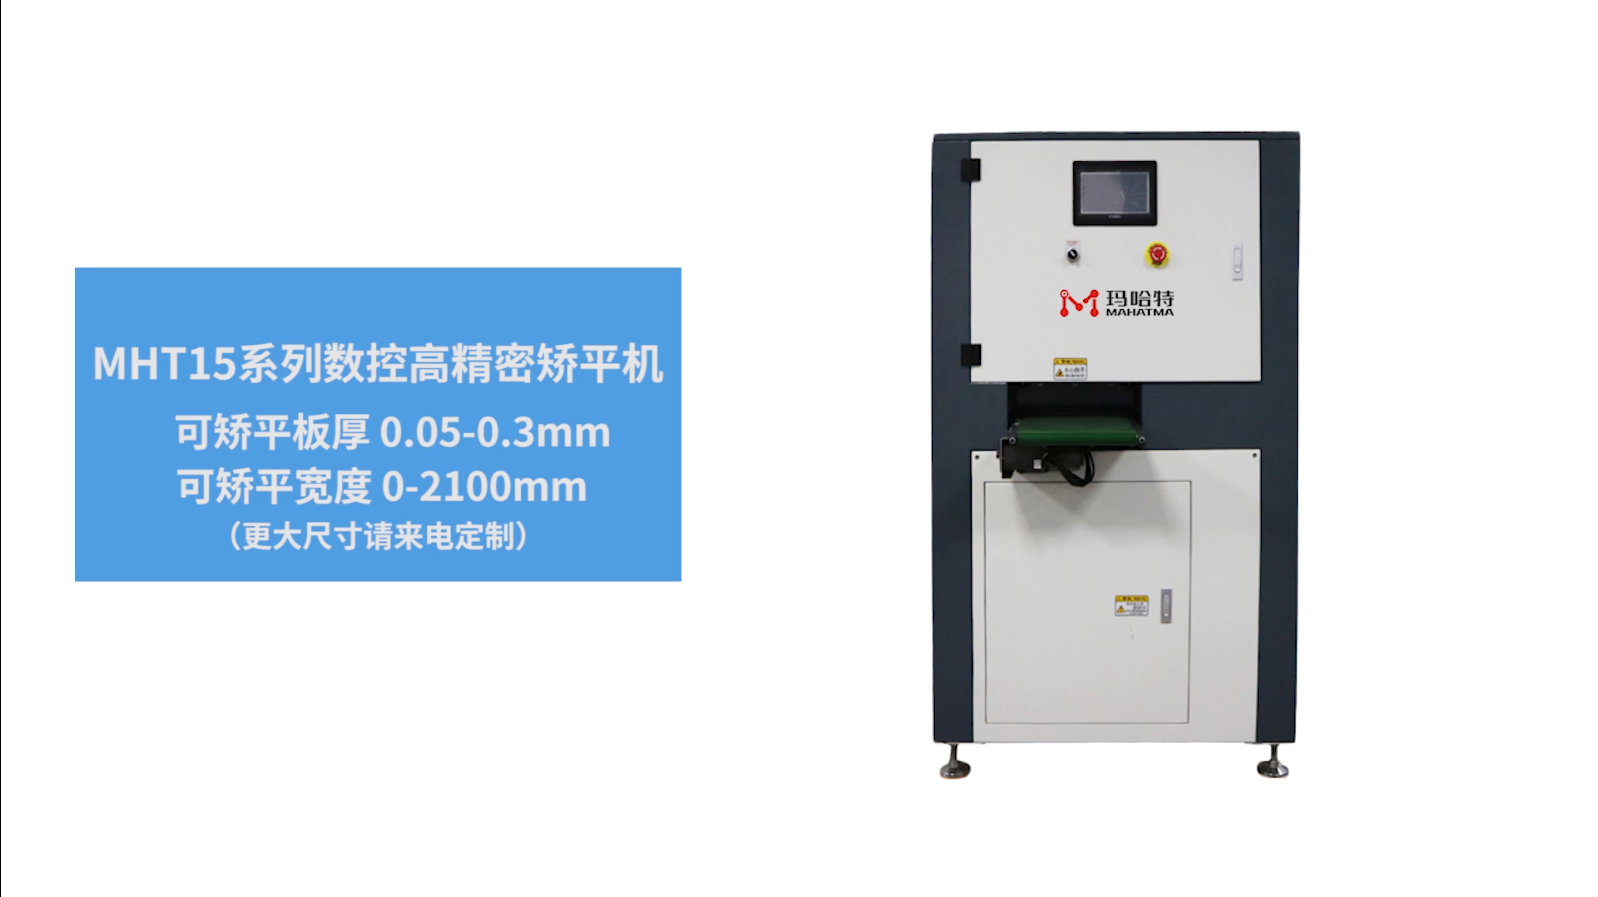 MHT15 Thin plate leveling machine